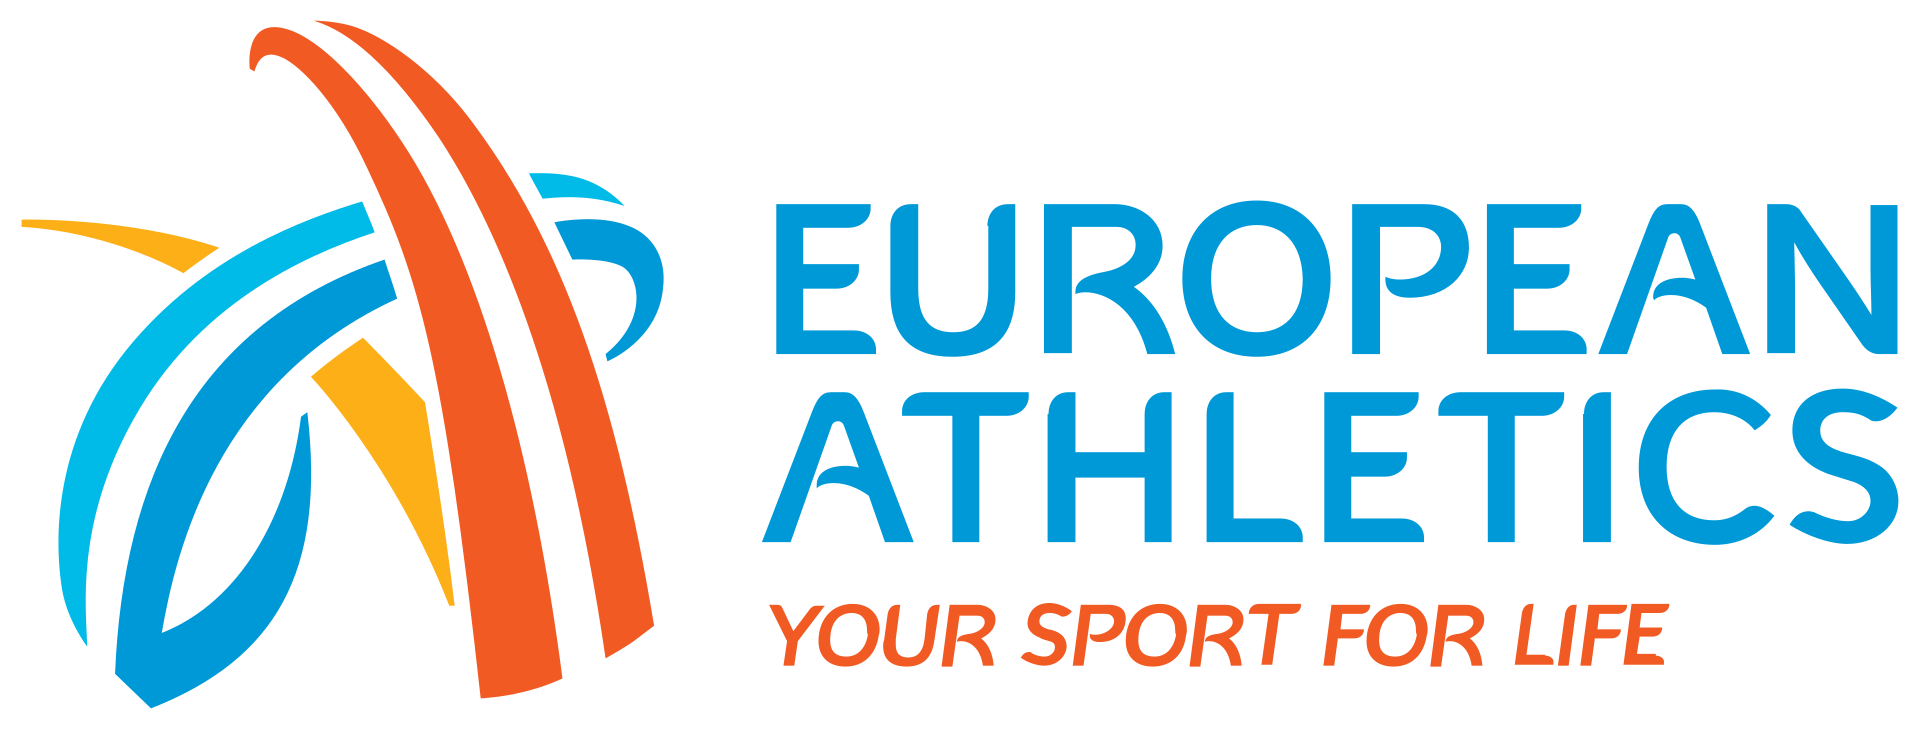 European_Athletic_Association_logo.svg.png